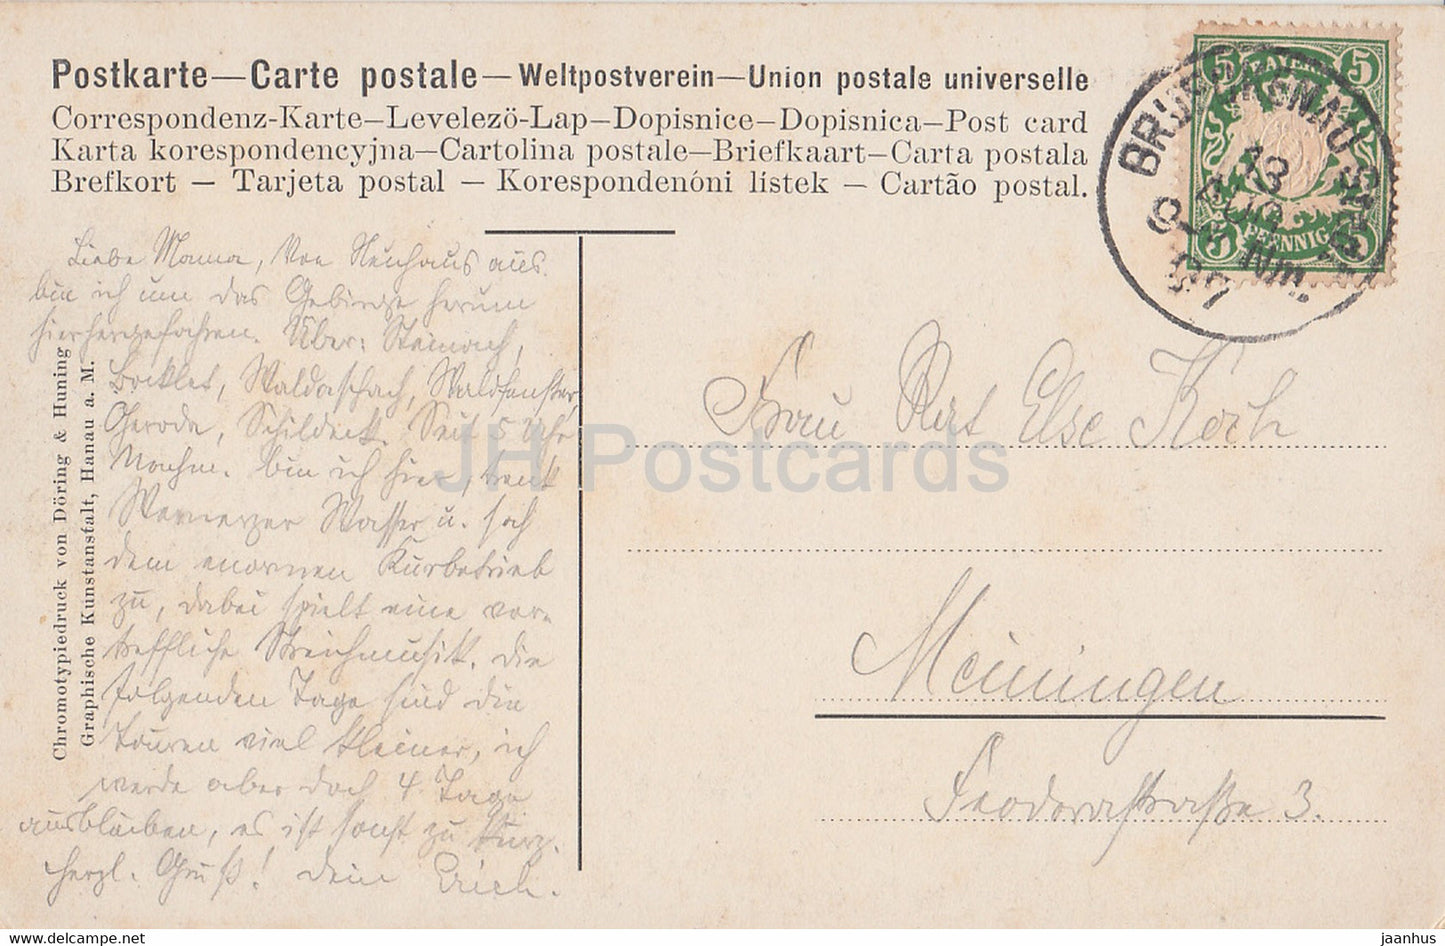 Luftkurort Bad Brückenau 298 Meter - alte Postkarte - 1907 - Deutschland - gebraucht